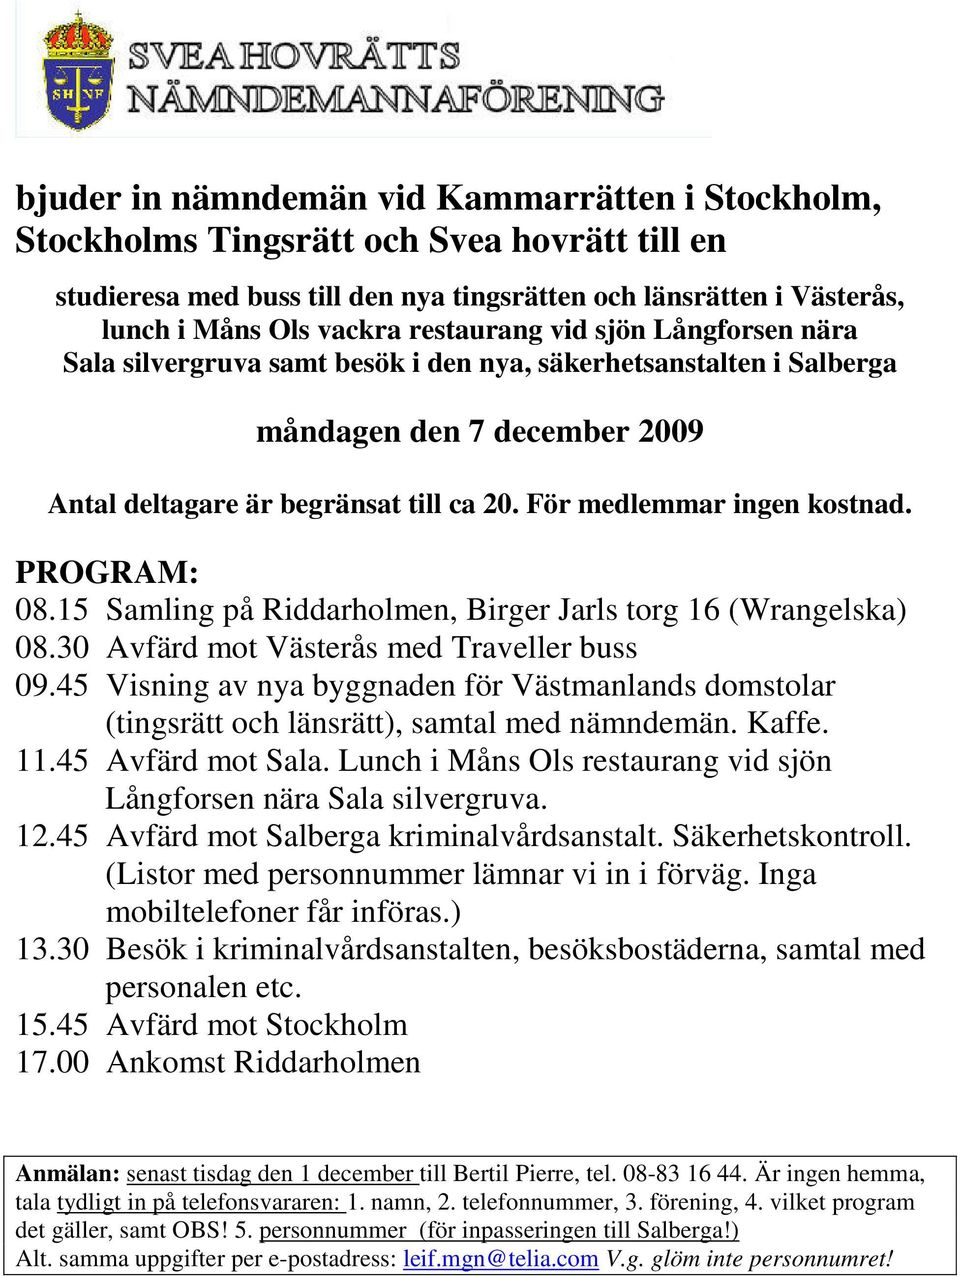 För medlemmar ingen kostnad. PROGRAM: 08.15 Samling på Riddarholmen, Birger Jarls torg 16 (Wrangelska) 08.30 Avfärd mot Västerås med Traveller buss 09.